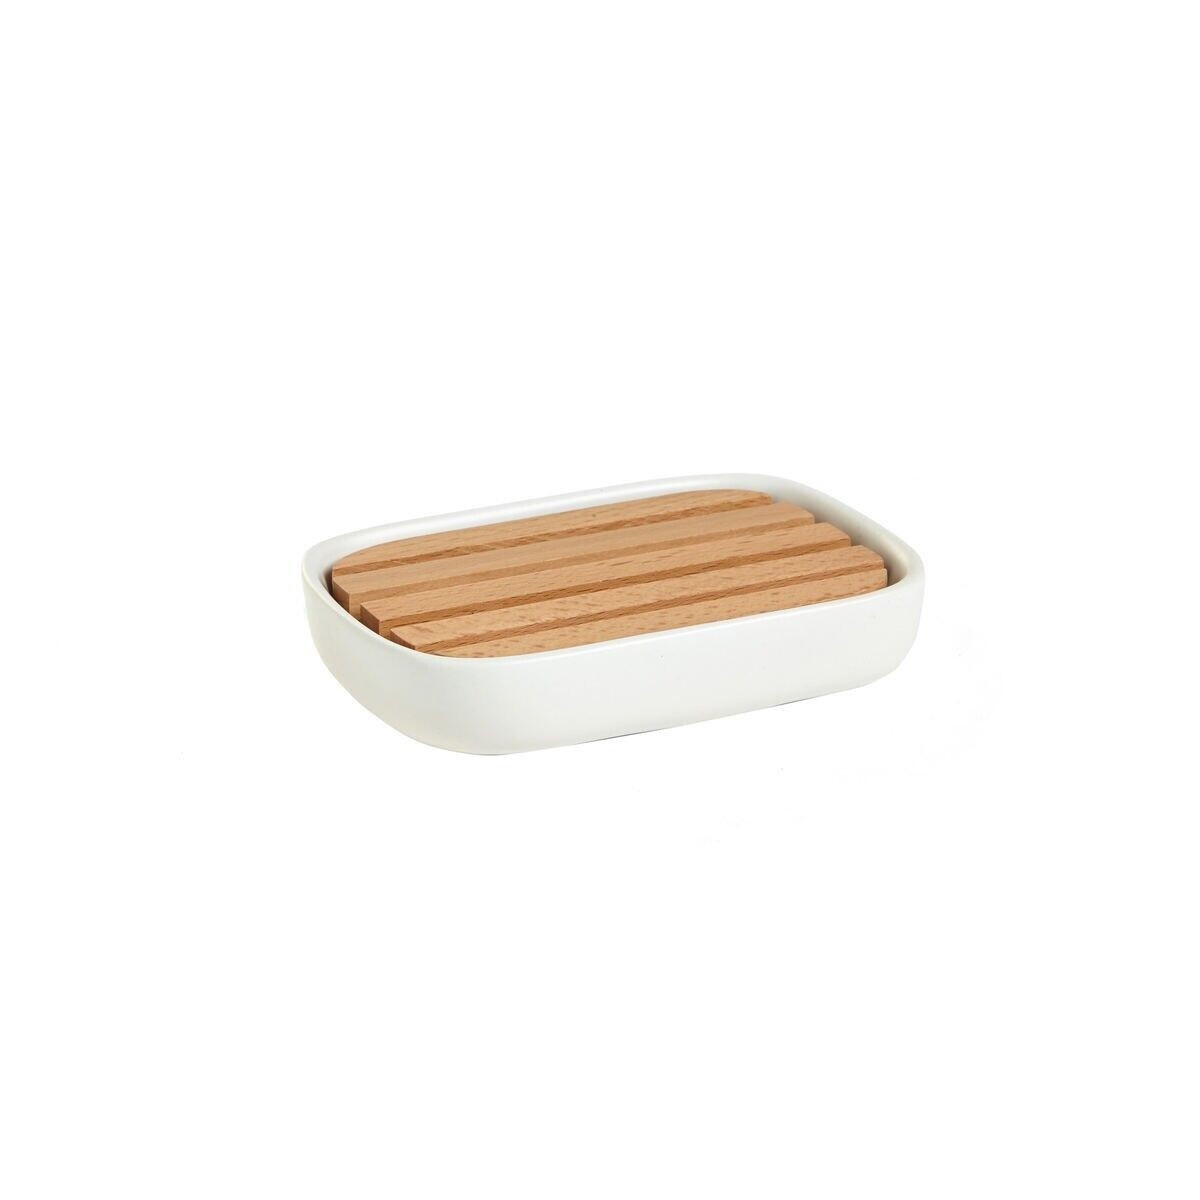 Loft ceramic soap holder, White / Brown, large image number 0